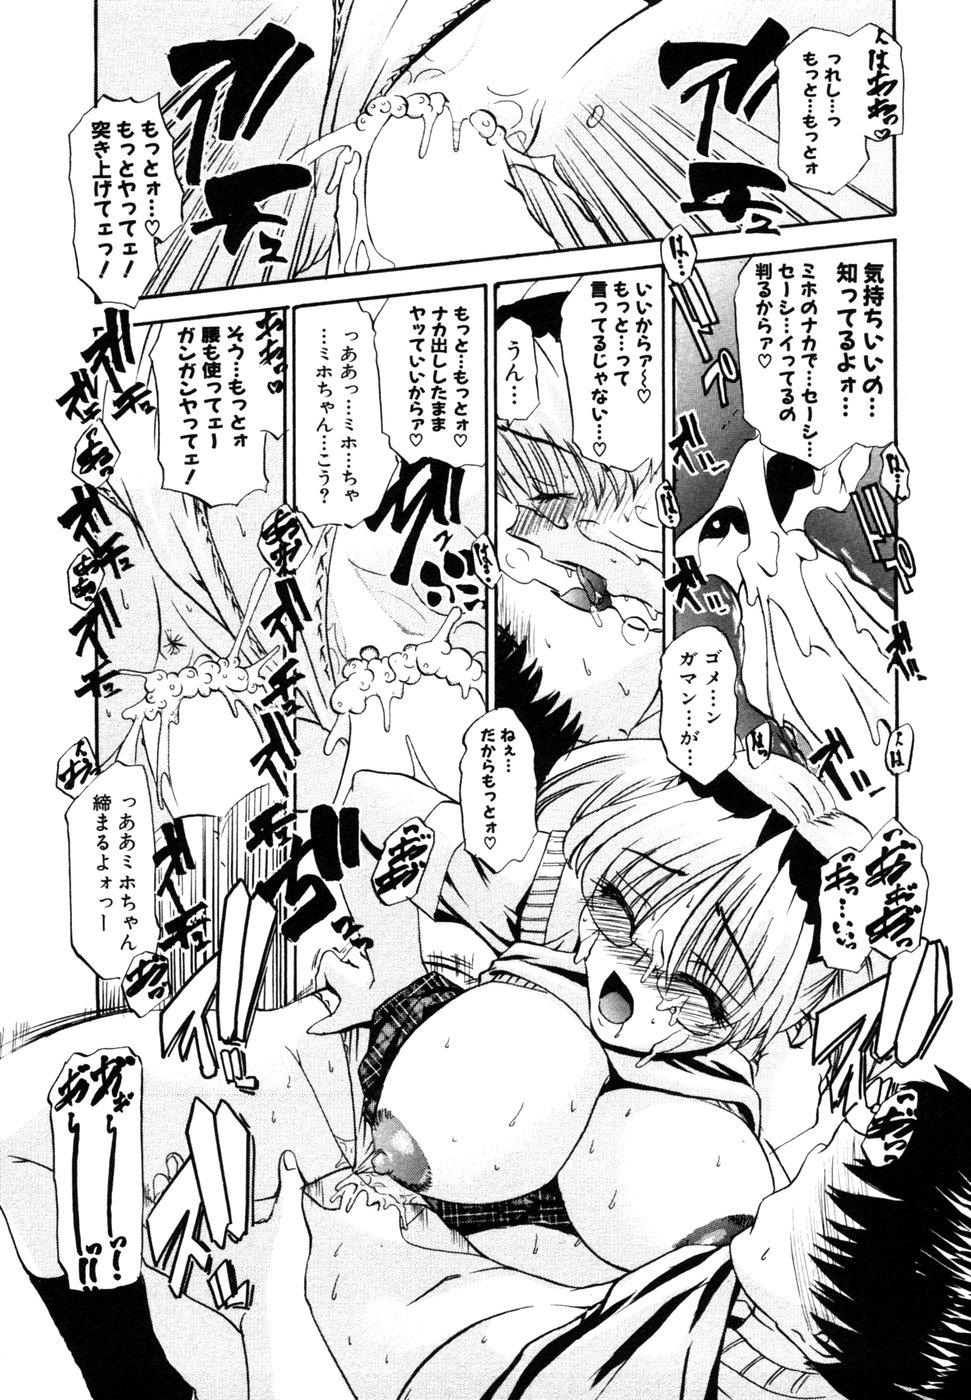 Himitsu no Tobira Vol.8 | The Secret Door Vol.8 89